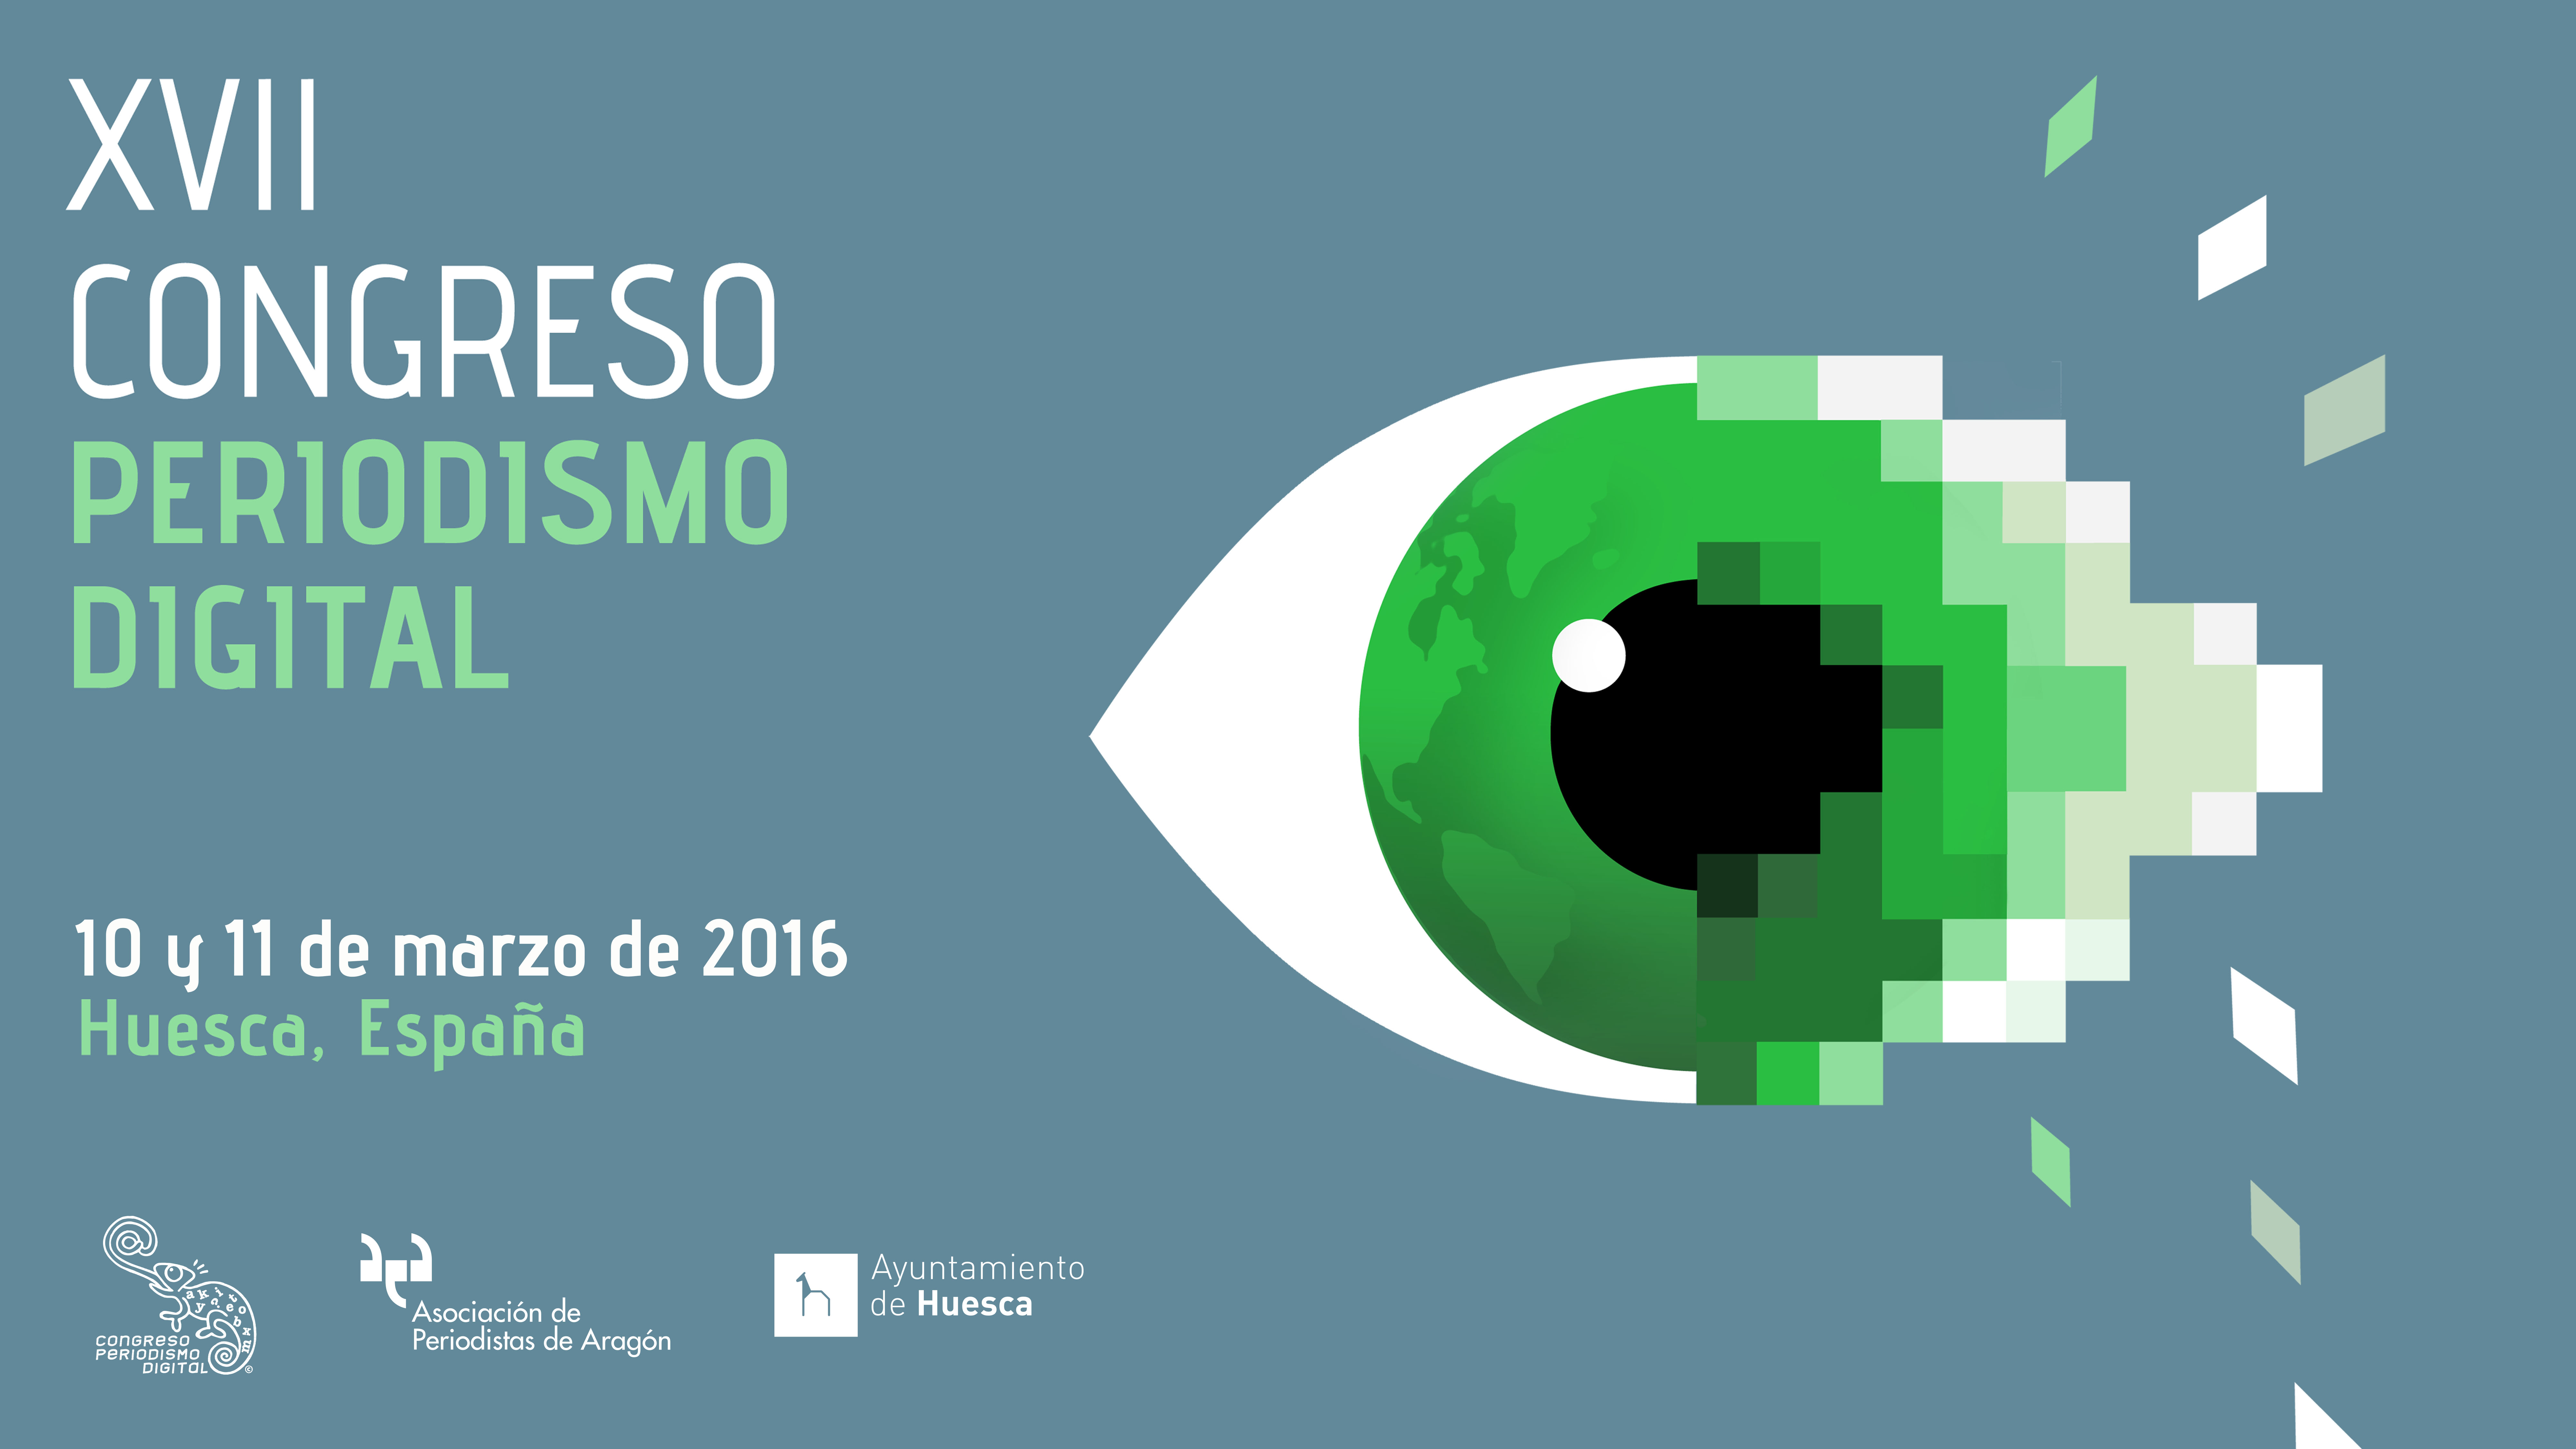 El Congreso de Periodismo Digital de Huesca celebrará su XVII edición los días 10 y 11 de marzo